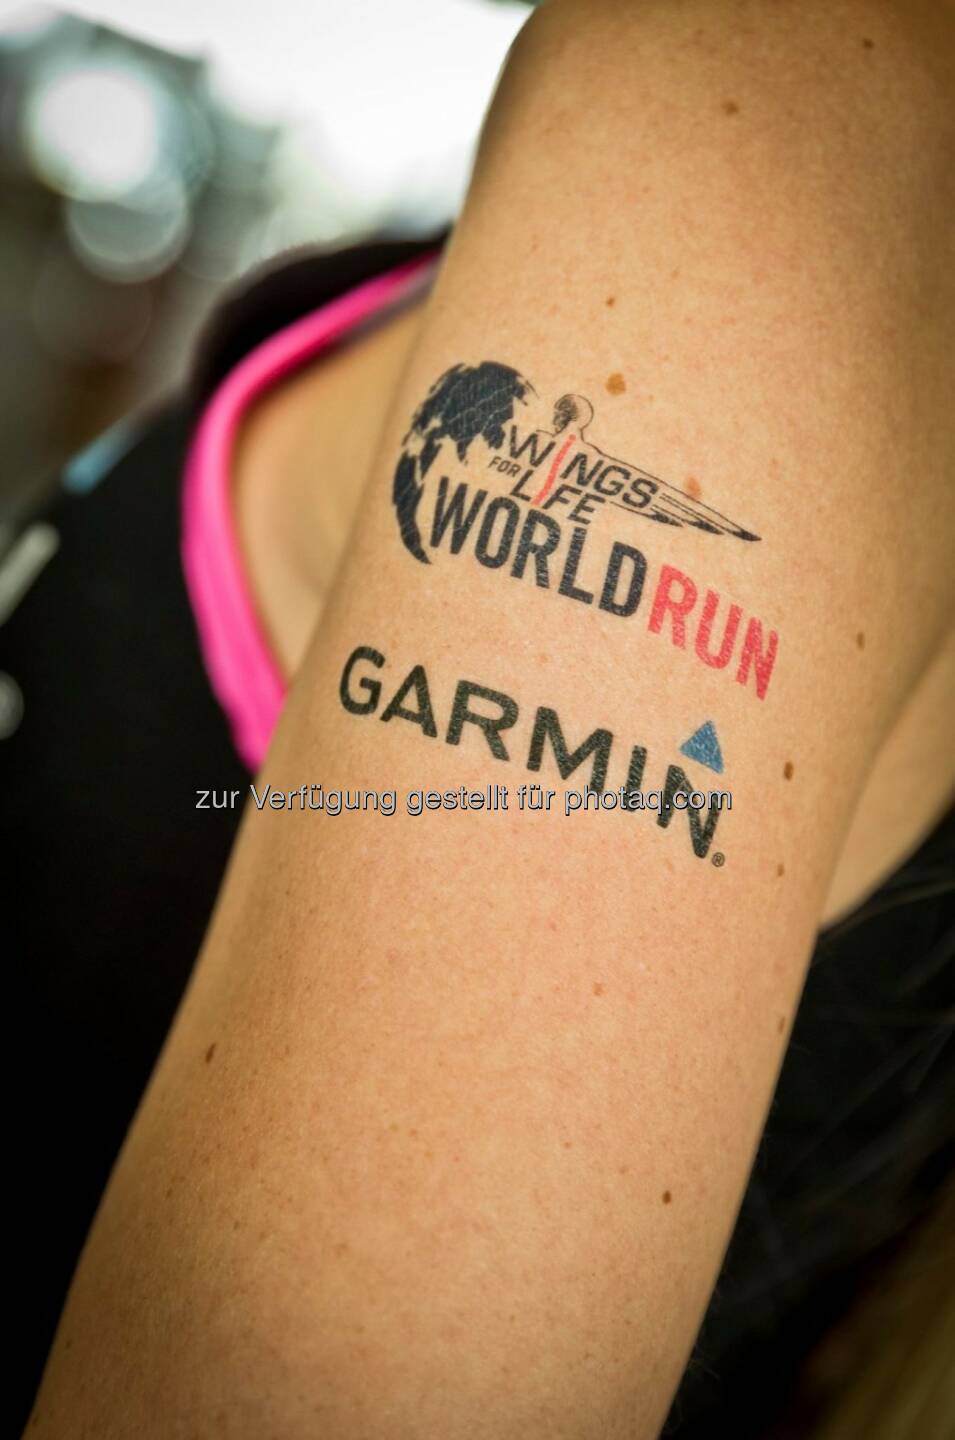 Alles bereit für den World Run heute? Zeigt hautnah, dass ihr dabei seid. Schaut bei uns am Garmin-Stand in Wien oder München vorbei und holt euch kostenlos die Garmin World Run Tattoos.

#Garmin #WorldRun #BeatYesterday (AB)  Source: http://facebook.com/GarminD